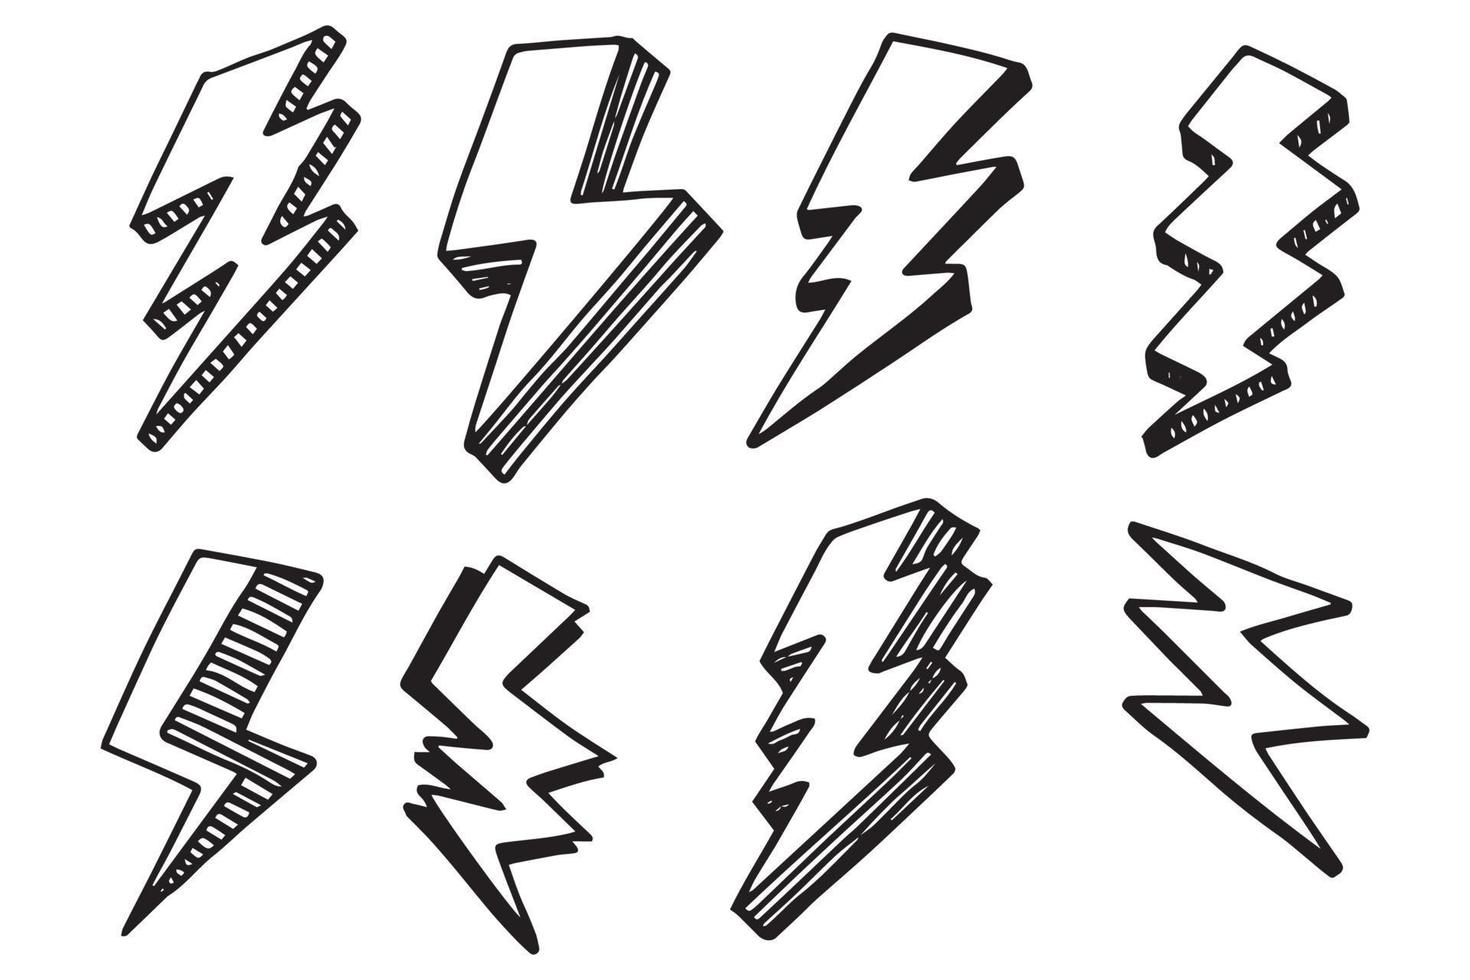 satz von handgezeichneten vektorgekritzel elektrische blitzsymbol skizzenillustrationen. Donner-Symbol-Doodle-Symbol. vektor